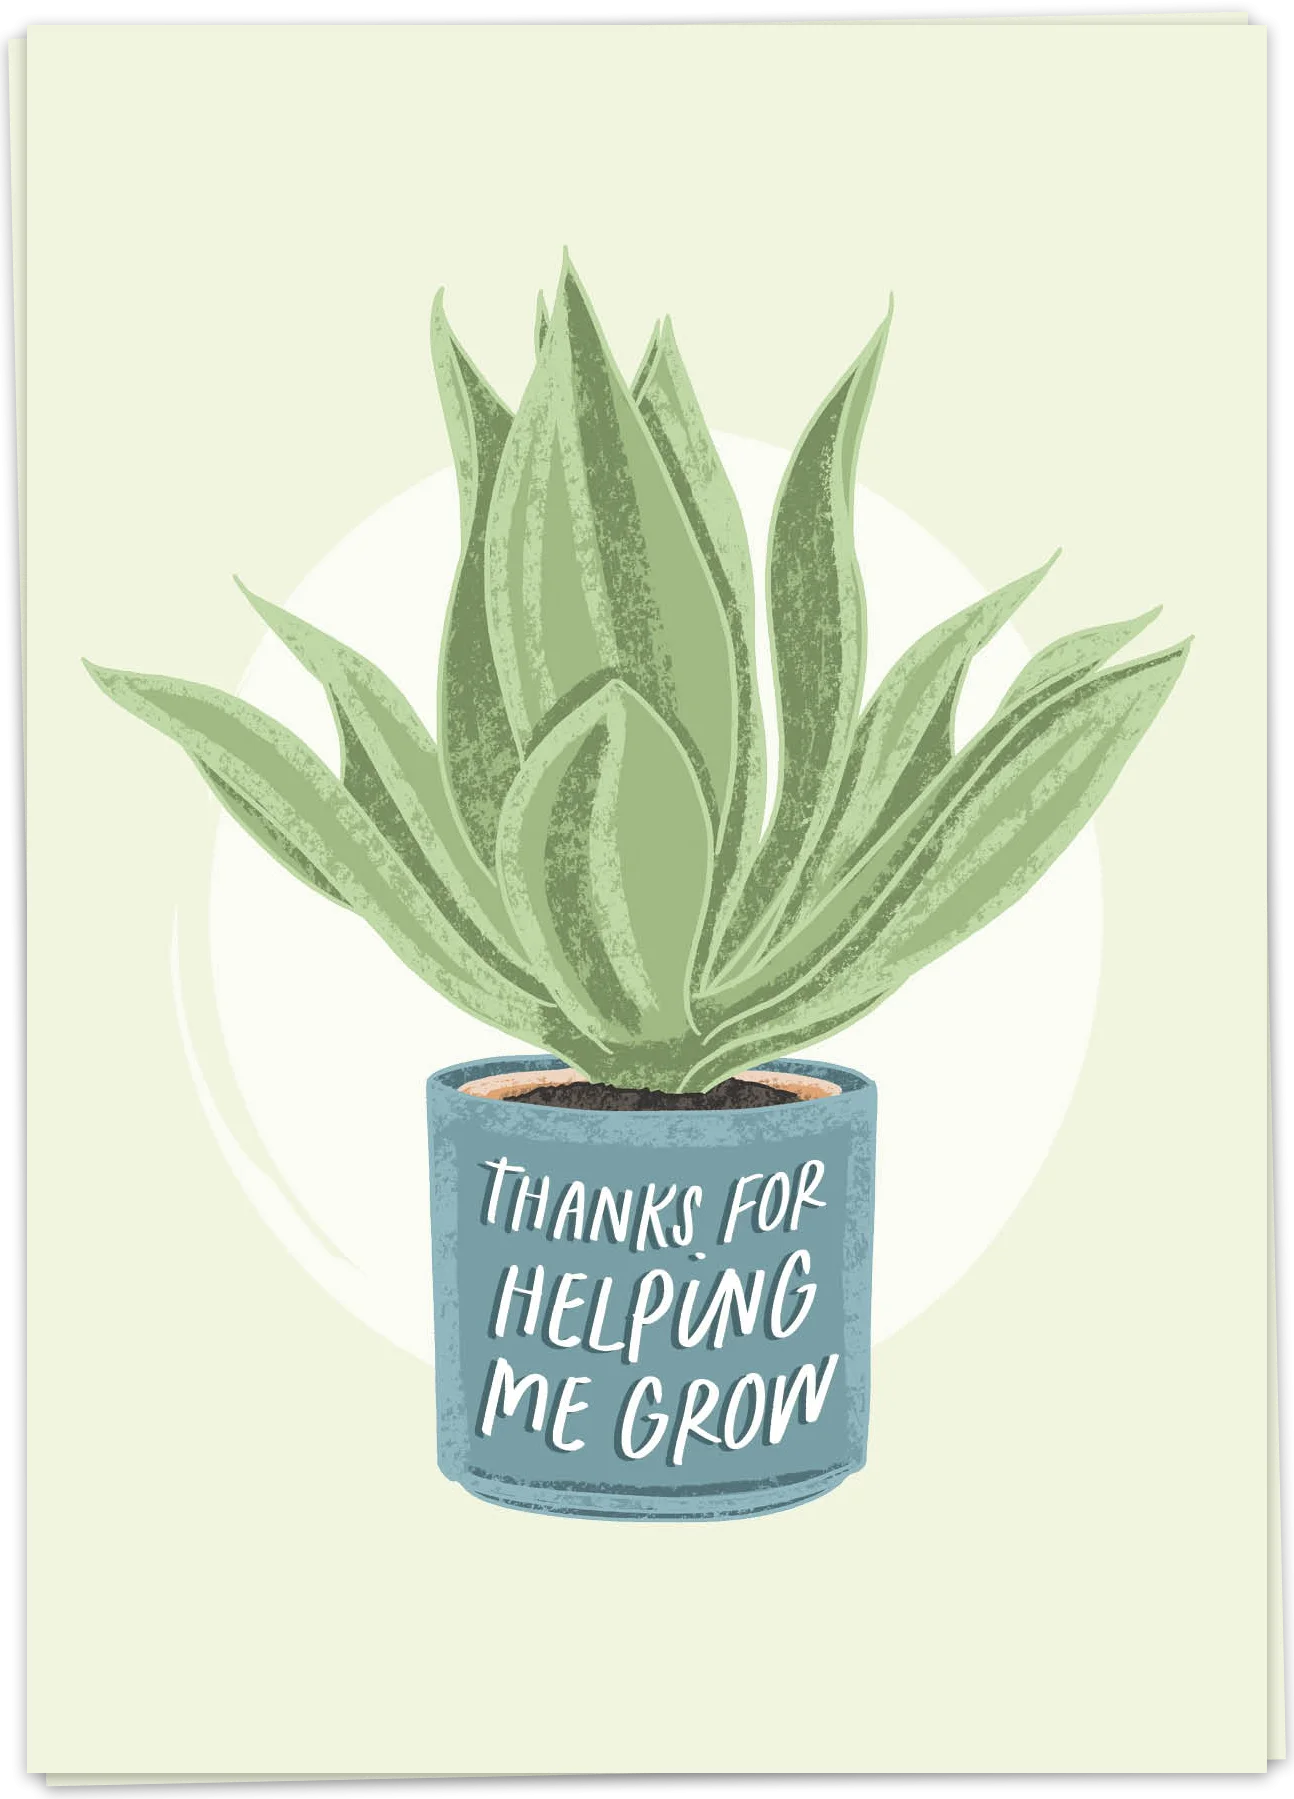 Helping me grow